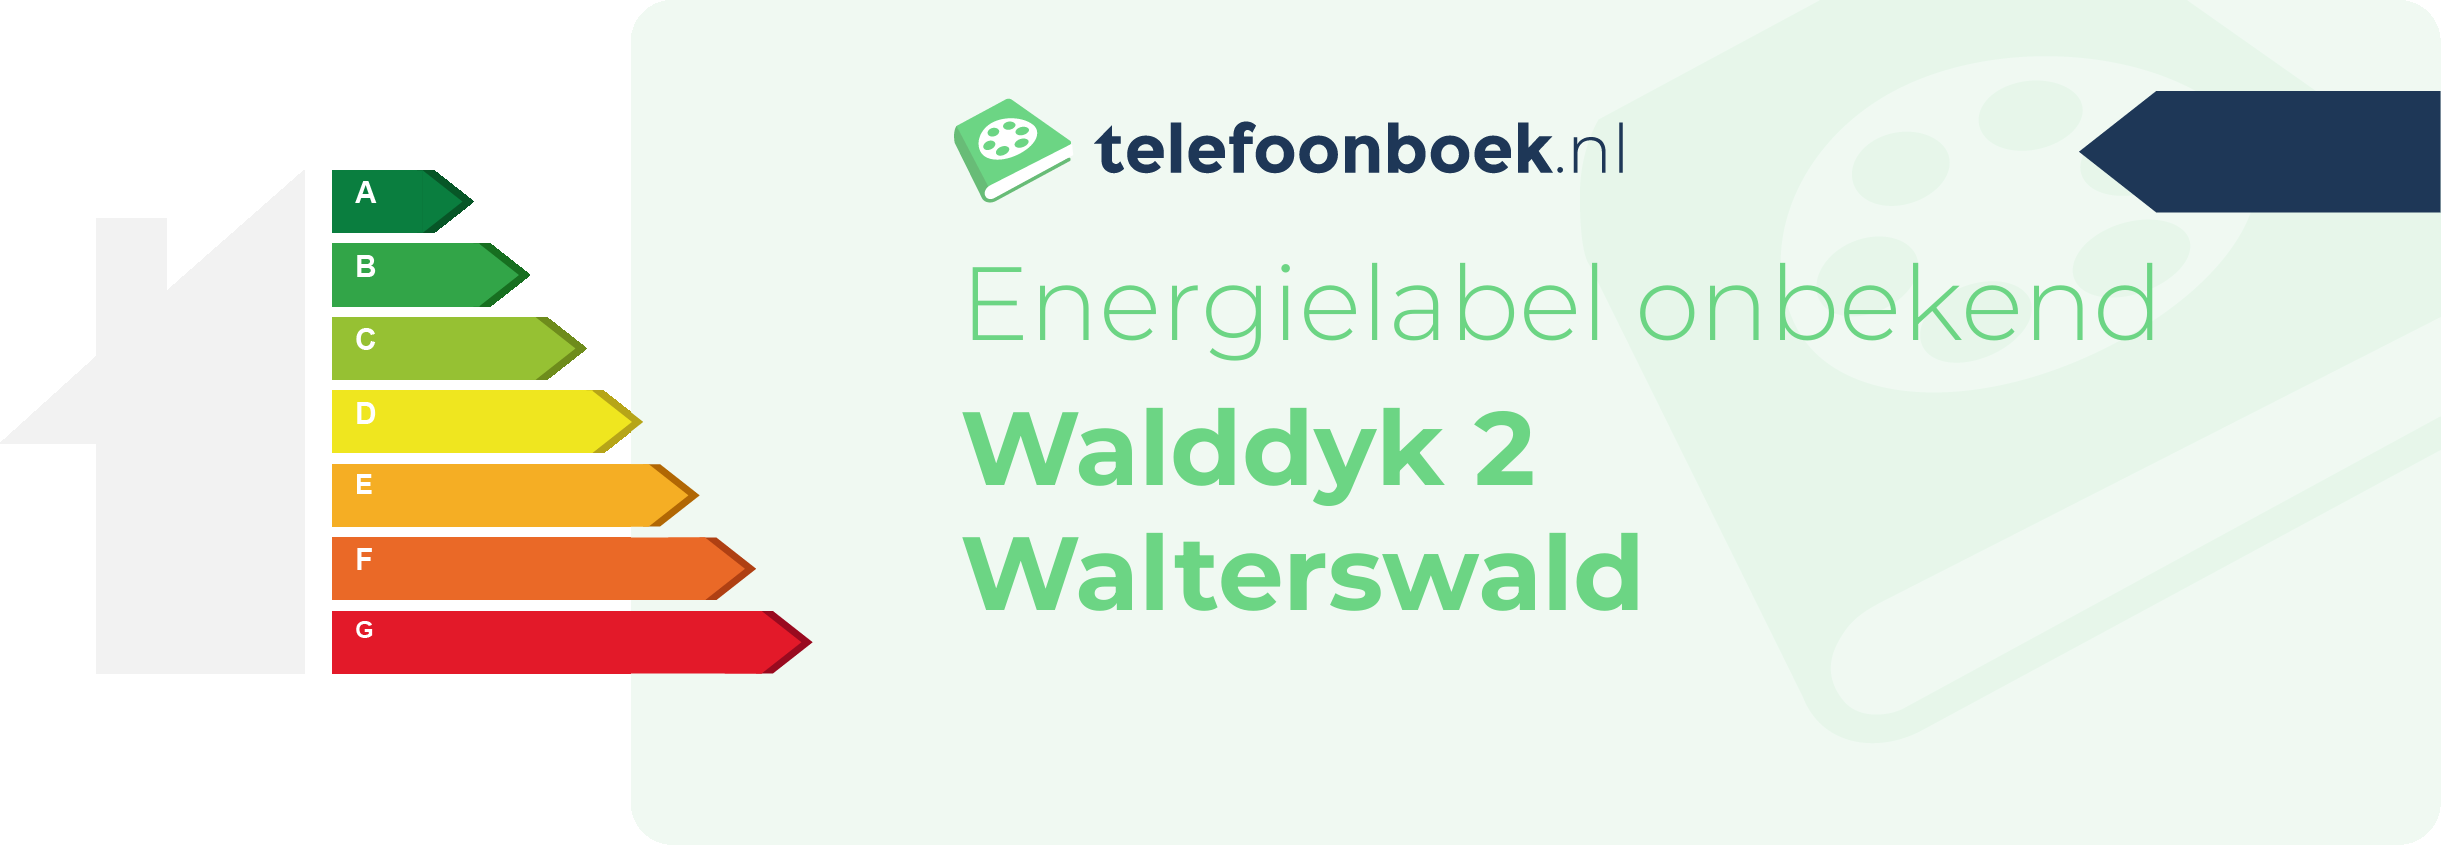 Energielabel Walddyk 2 Walterswald